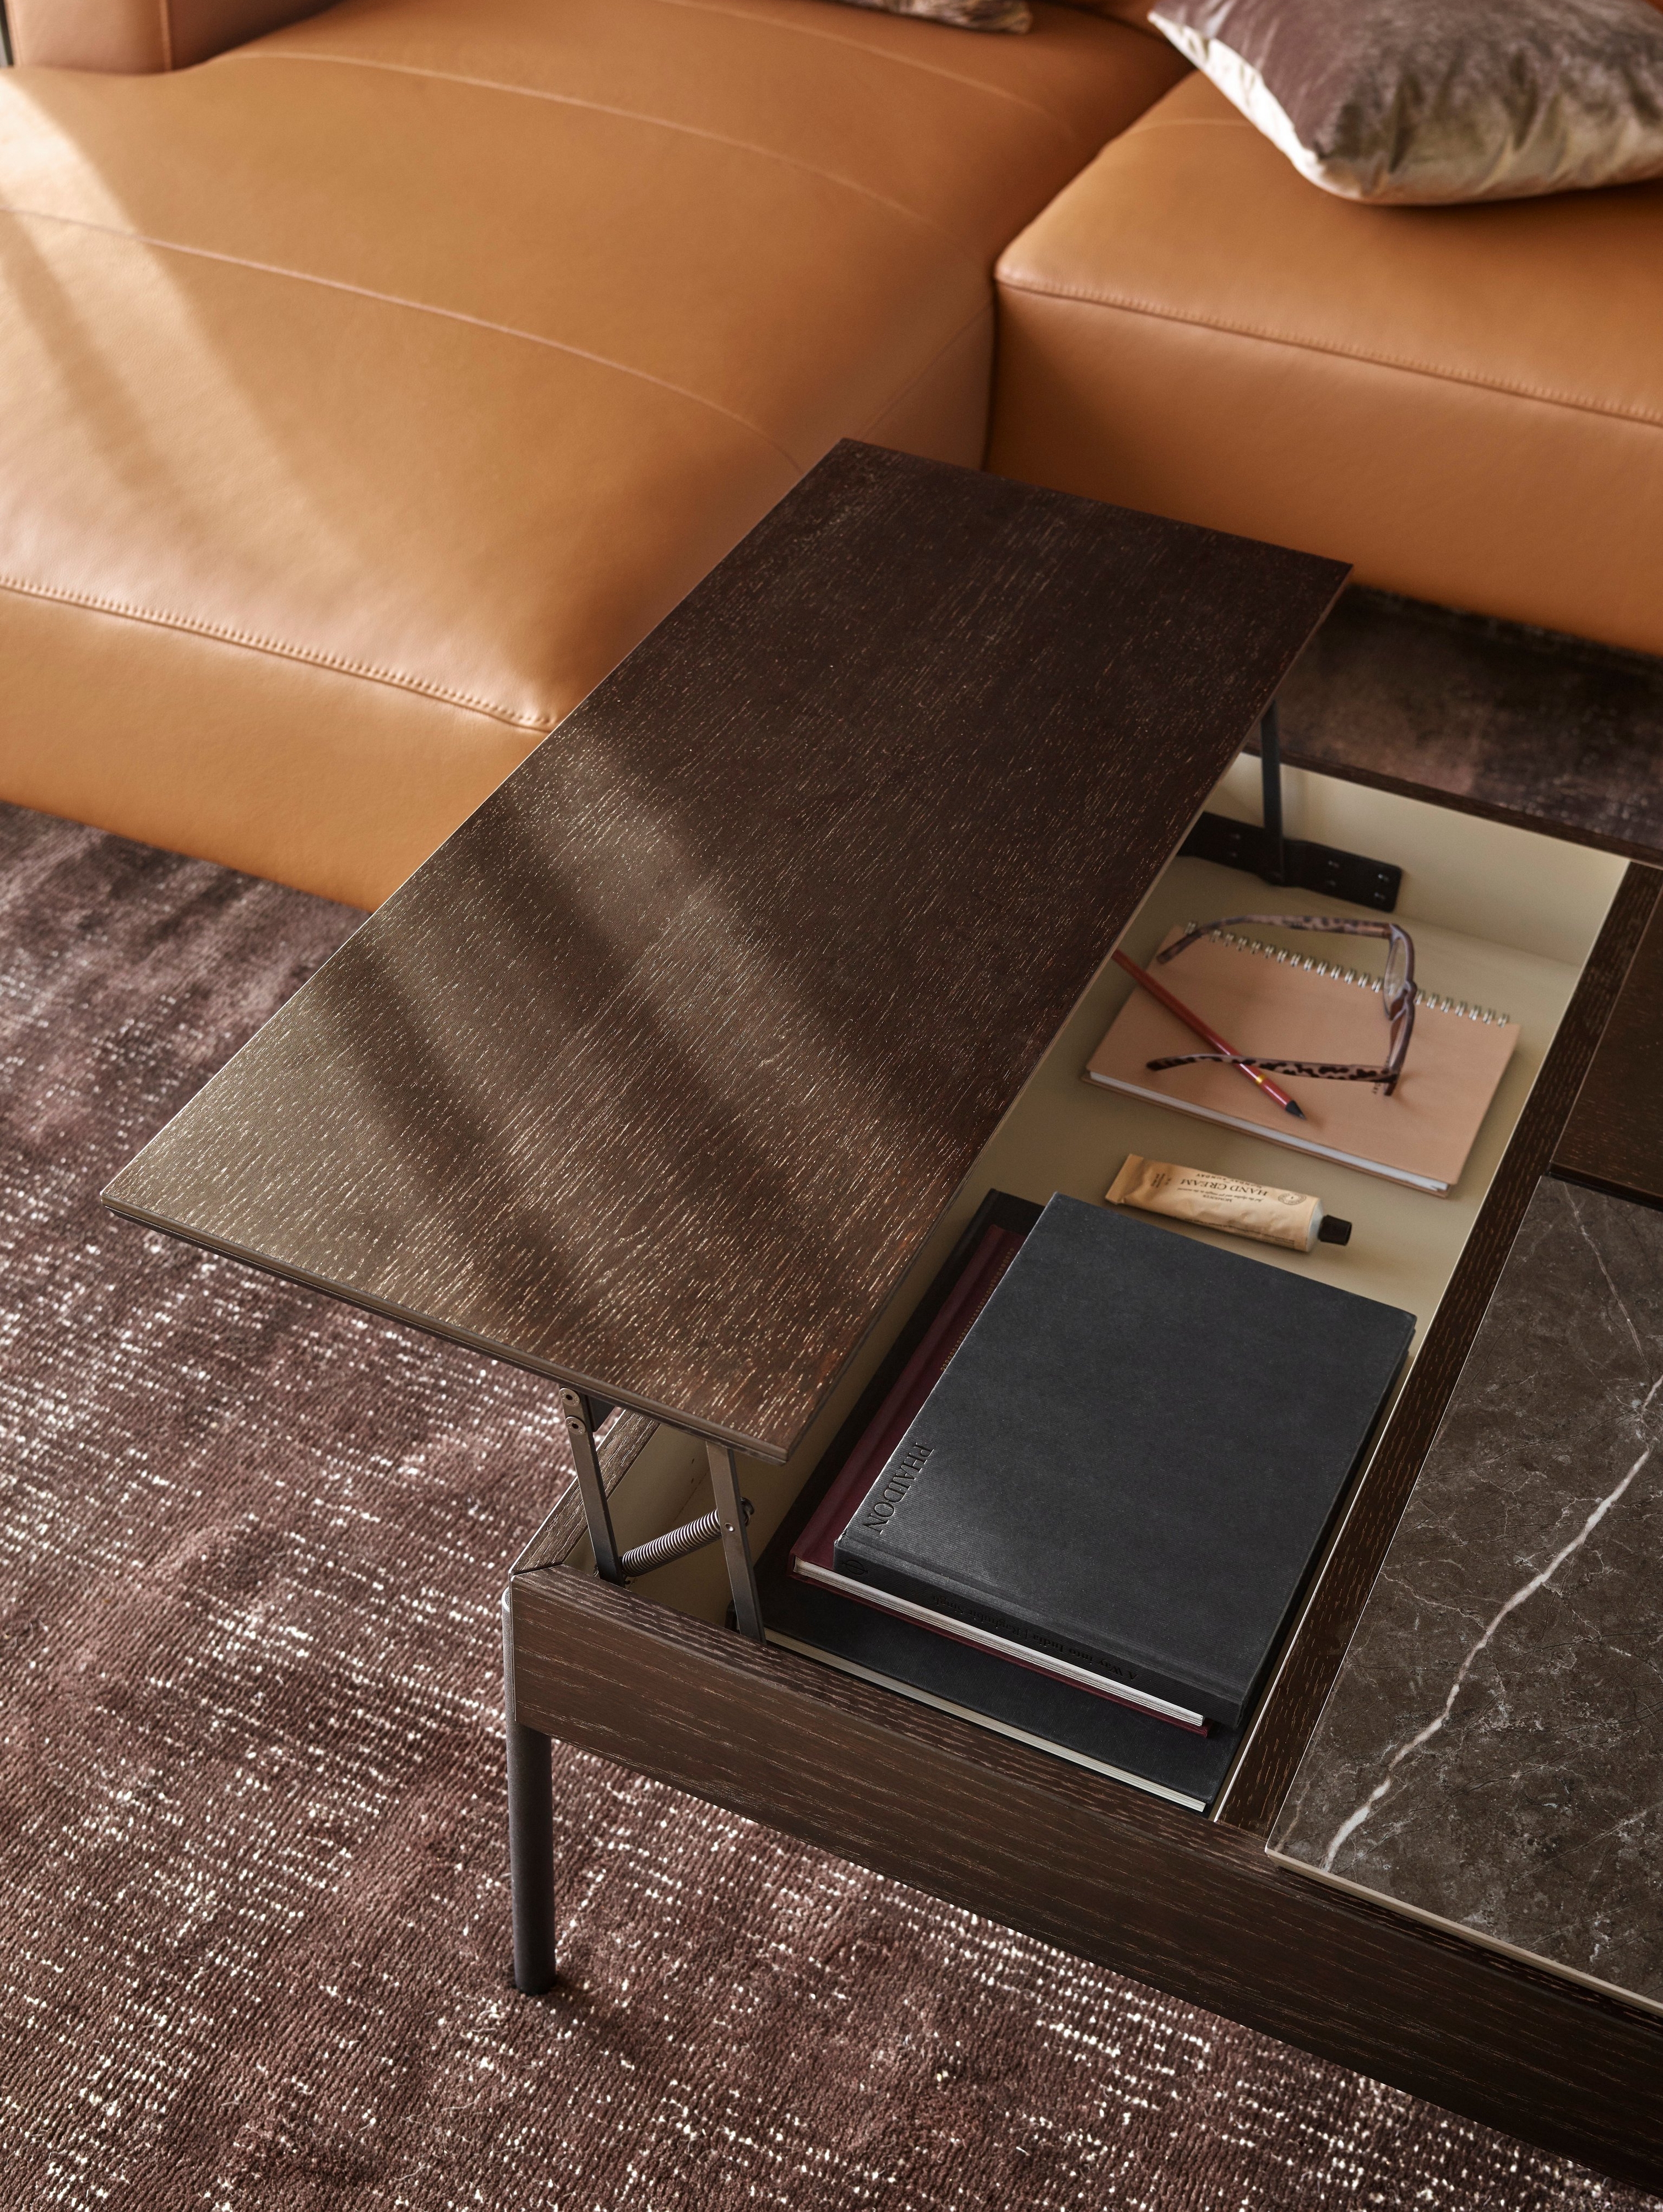 Nærbillede af moderne Chiva sofabord med bøger og accessories tæt på gyldenbrun lædersofa.